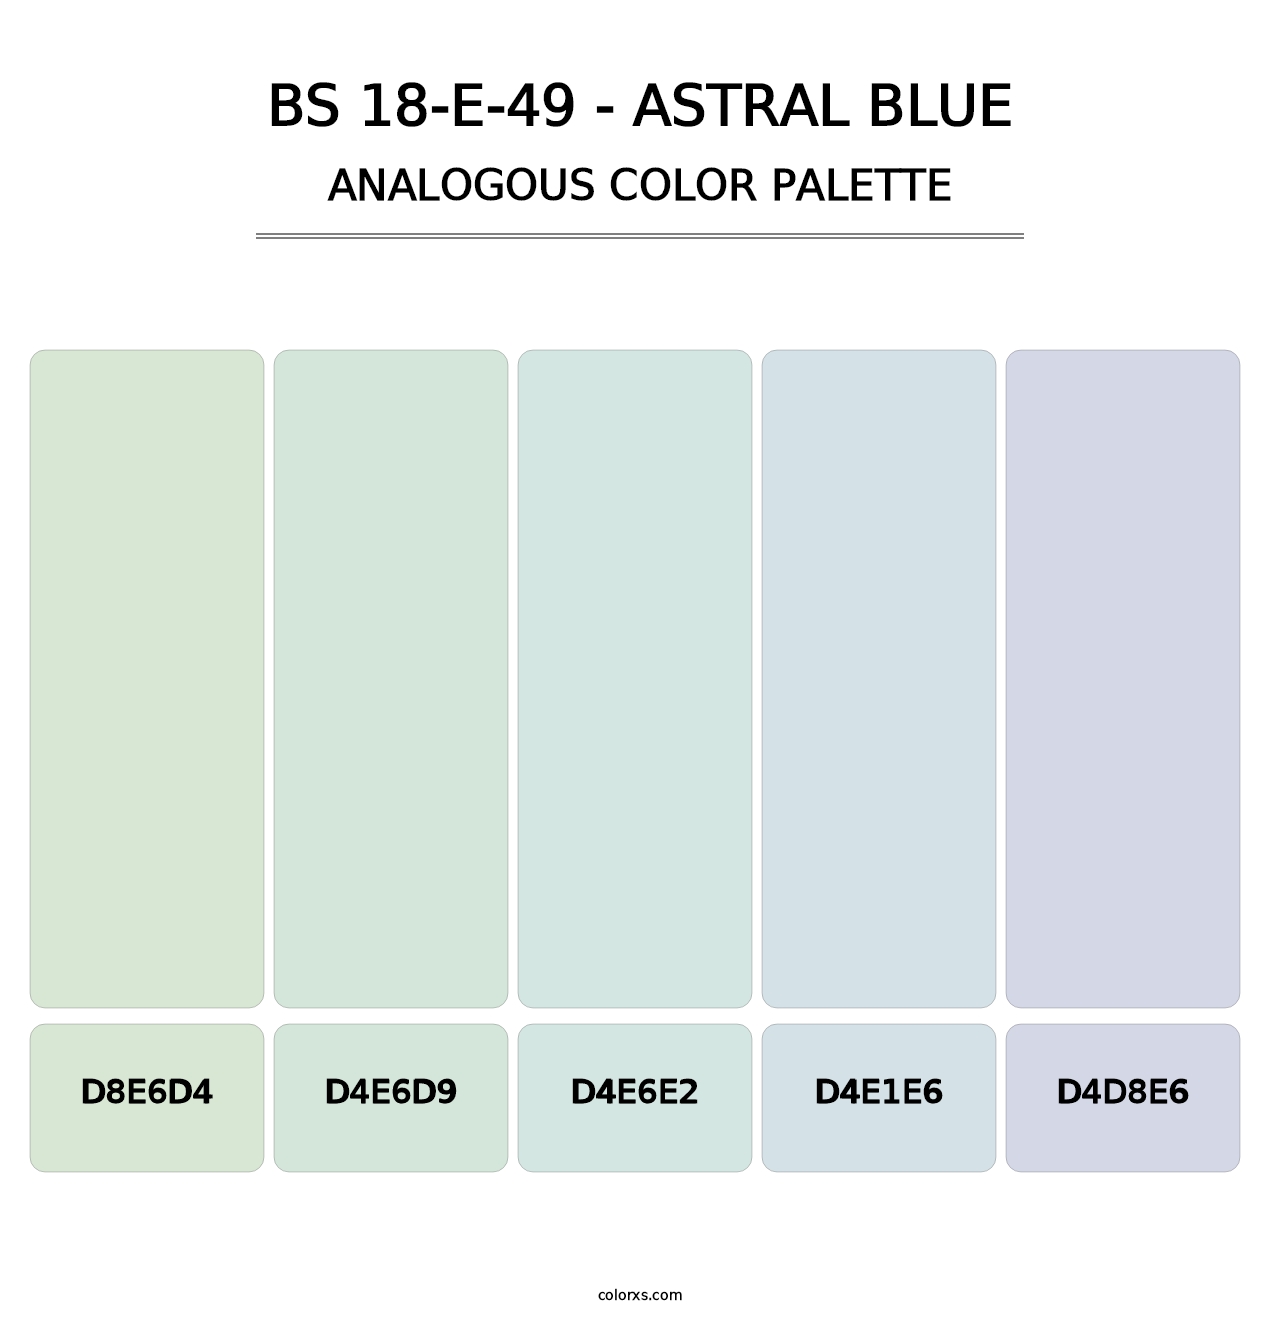 BS 18-E-49 - Astral Blue - Analogous Color Palette